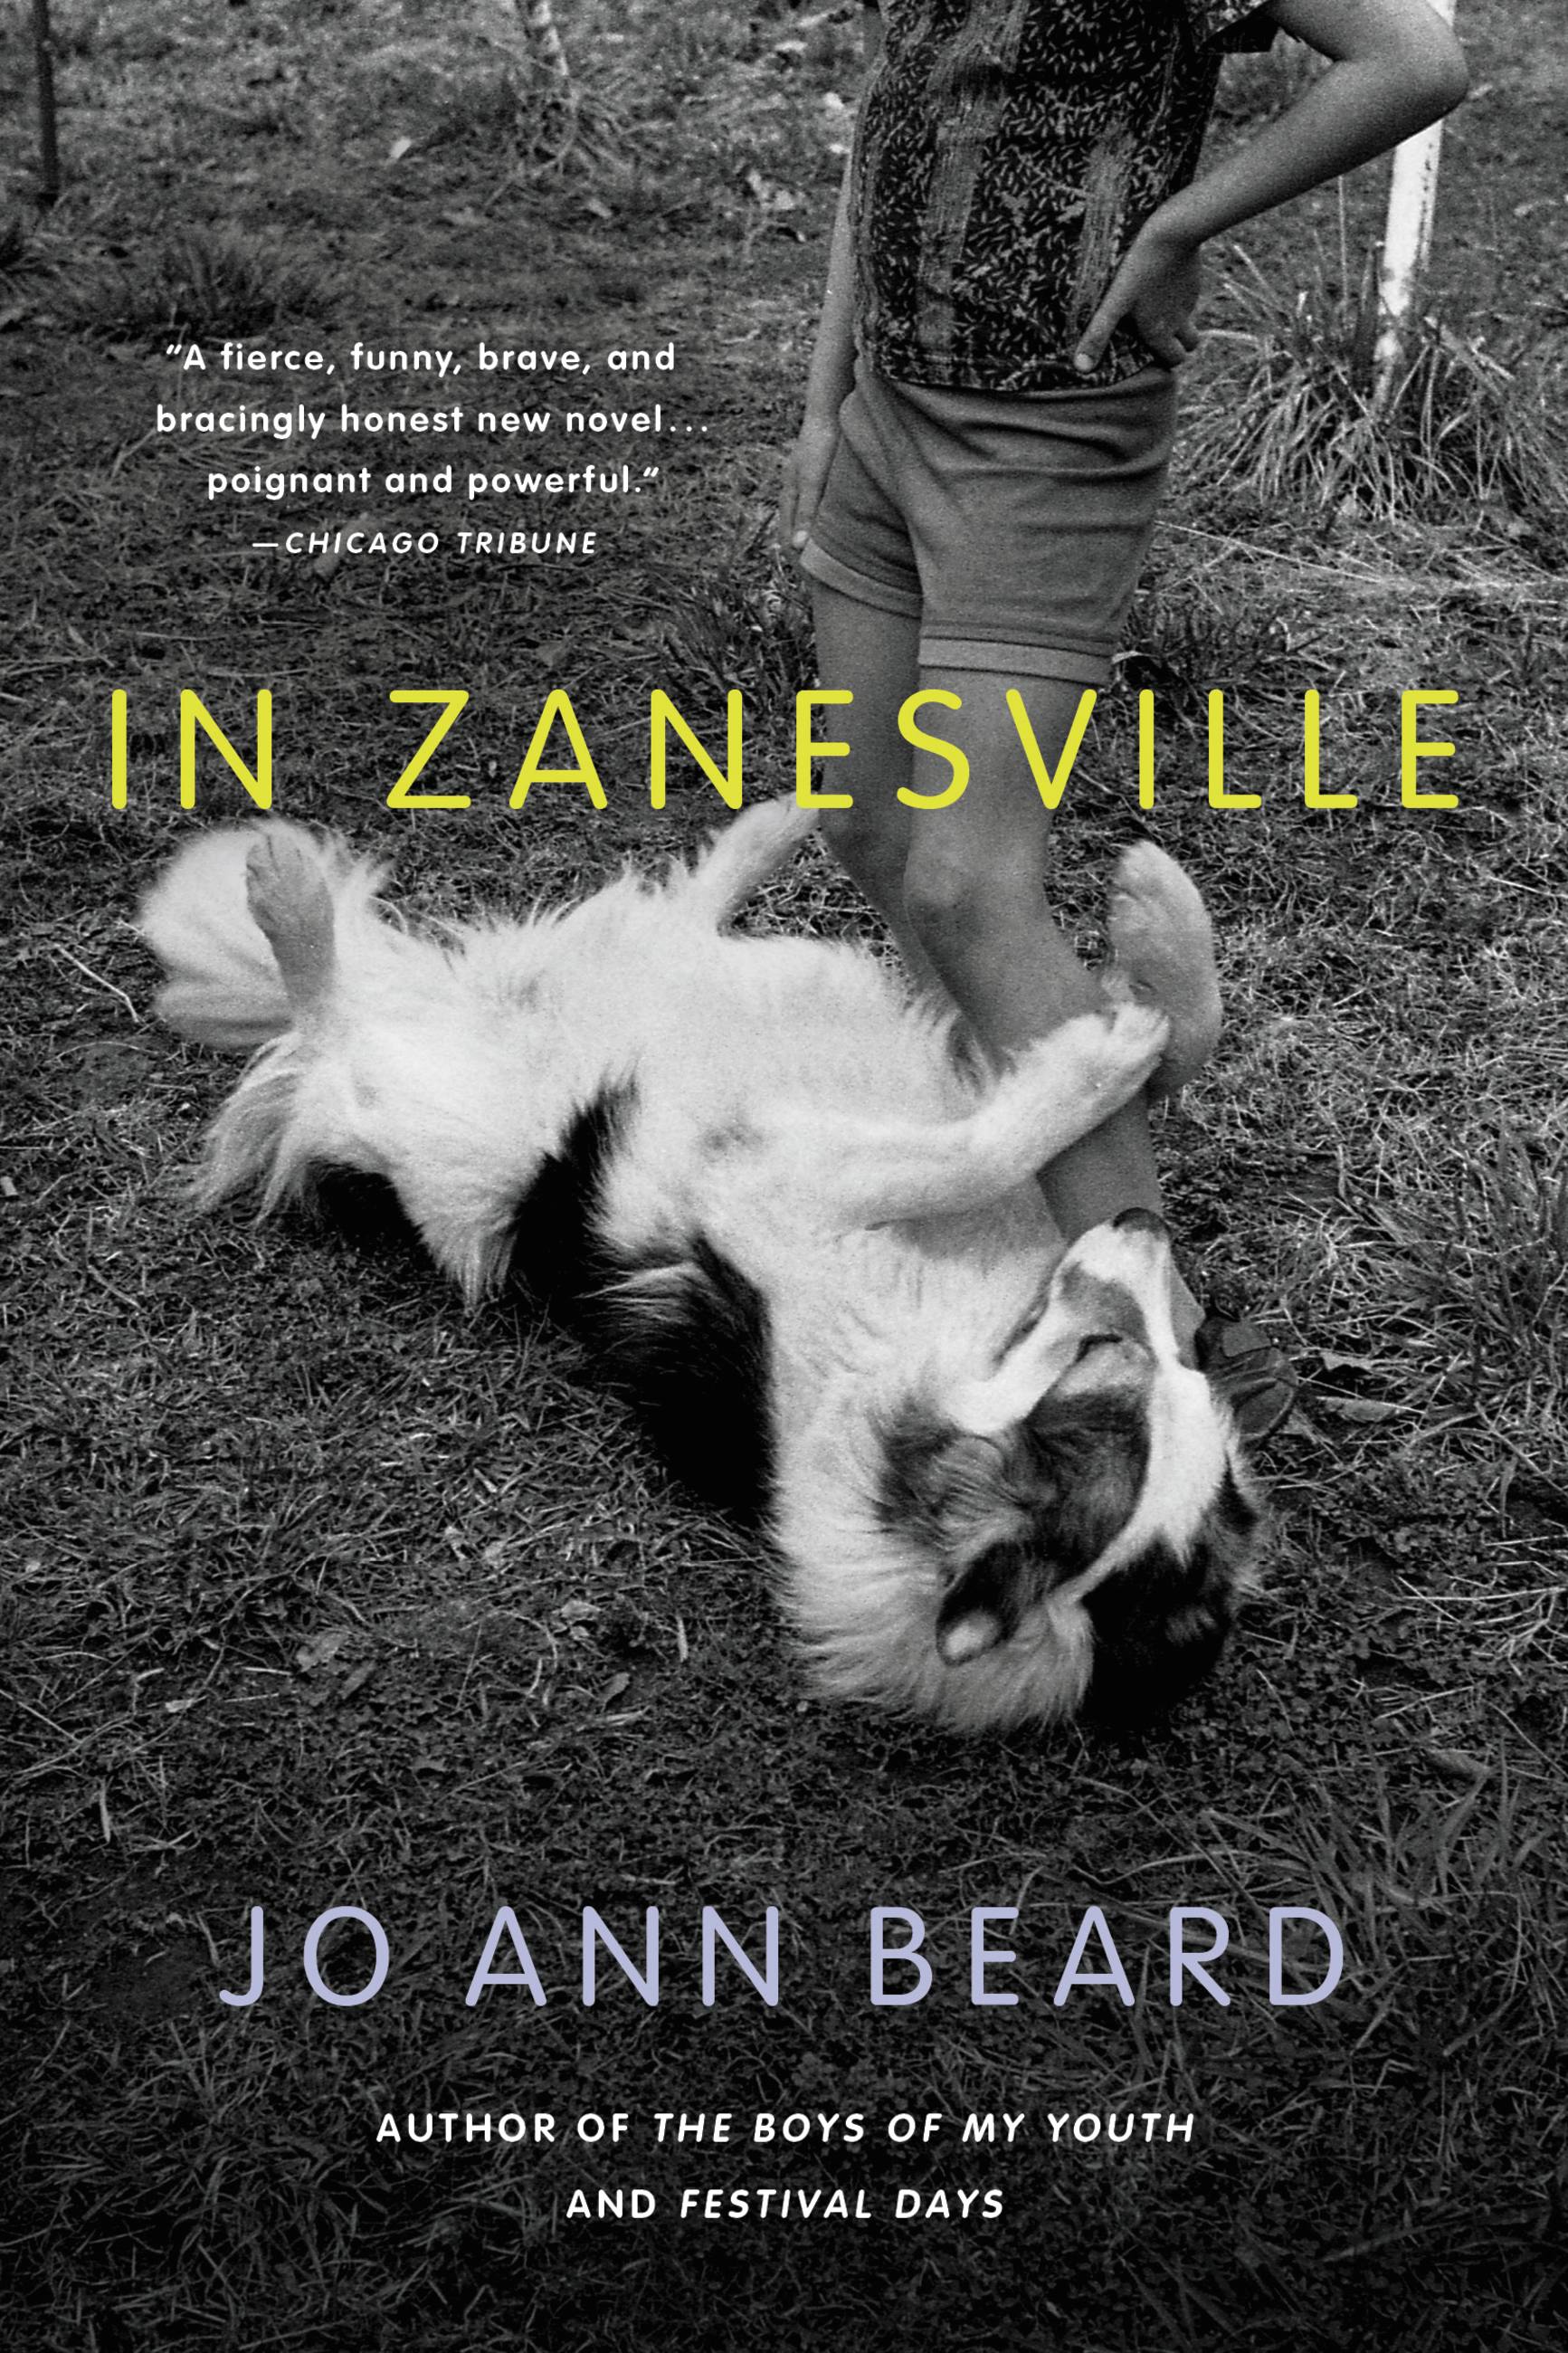 Petite Teen Banged - In Zanesville by Jo Ann Beard | Hachette Book Group